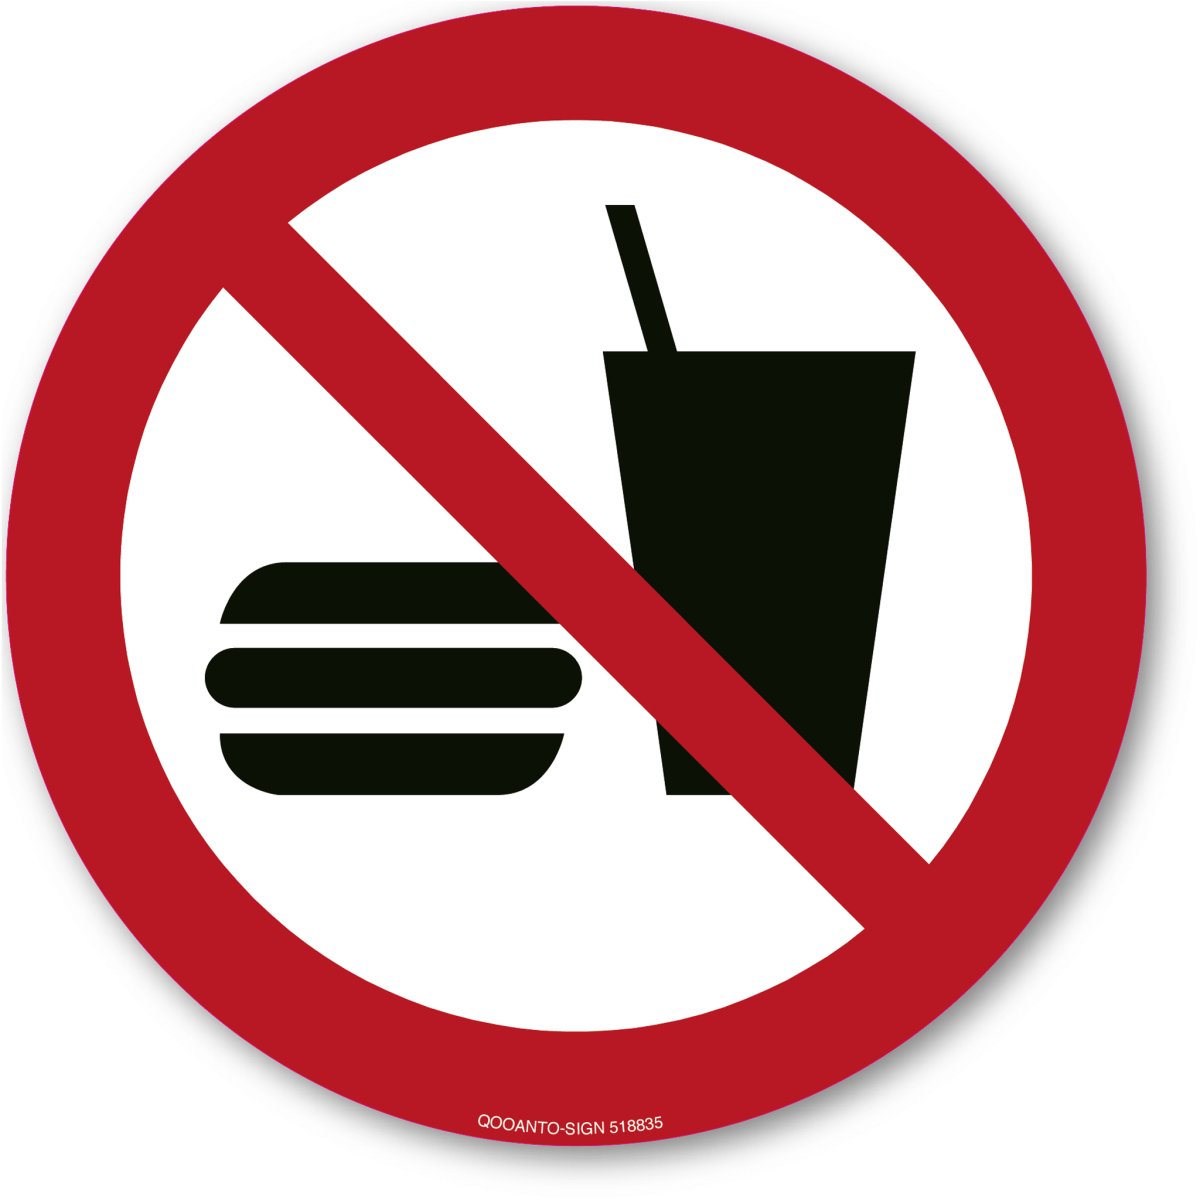 Essen Und Trinken Verboten, EN ISO 7010, P022 Verbotsschild oder Aufkleber aus Alu-Verbund oder Selbstklebefolie mit UV-Schutz - QOOANTO-SIGN